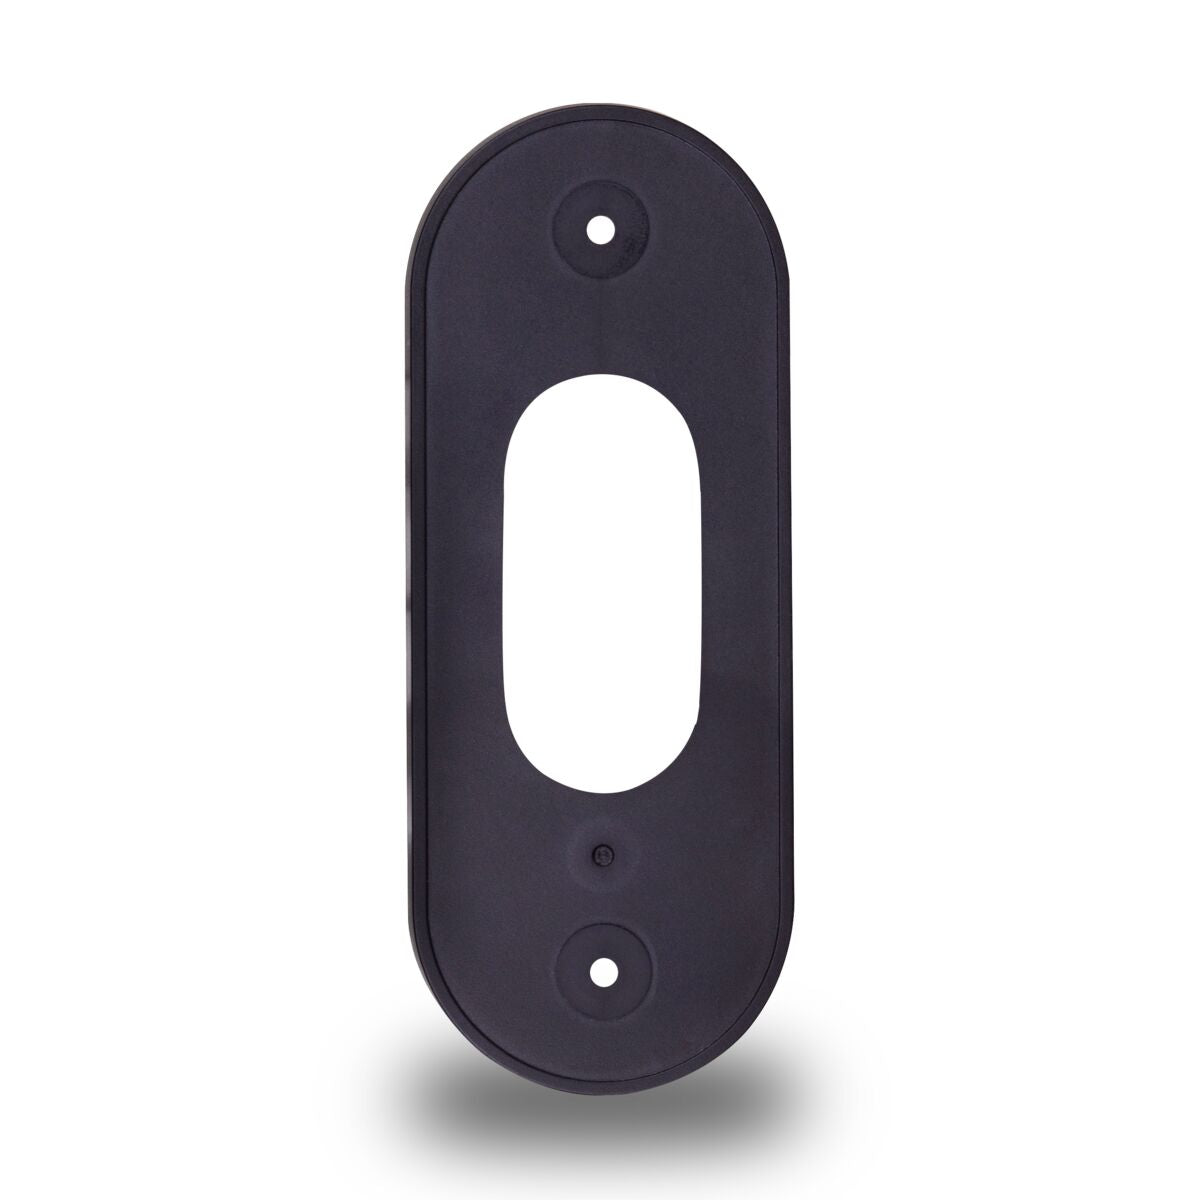 Buzz LO - Doorbell camera - Mounting Piece Back View Image | Marmitek